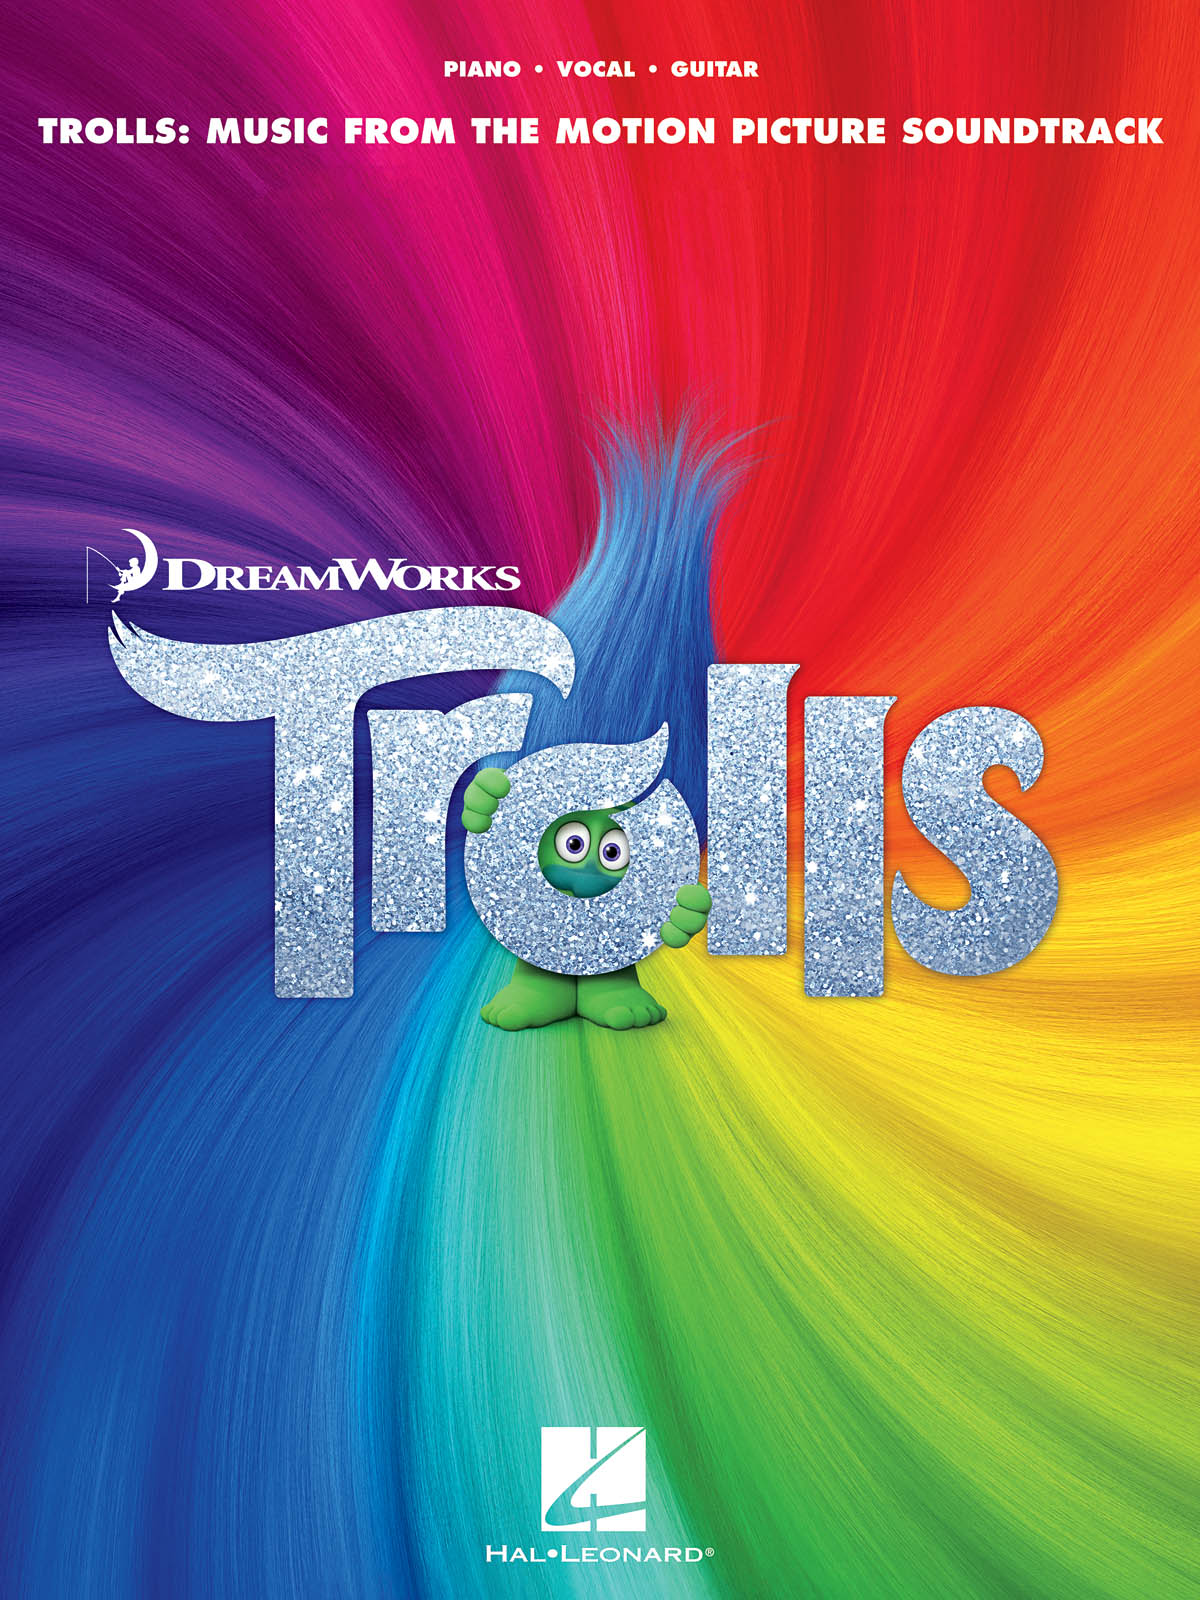 Trolls - Music From The Motion Picture Soundtrack - písně pro zpěv, klavír s akordy pro kytaru